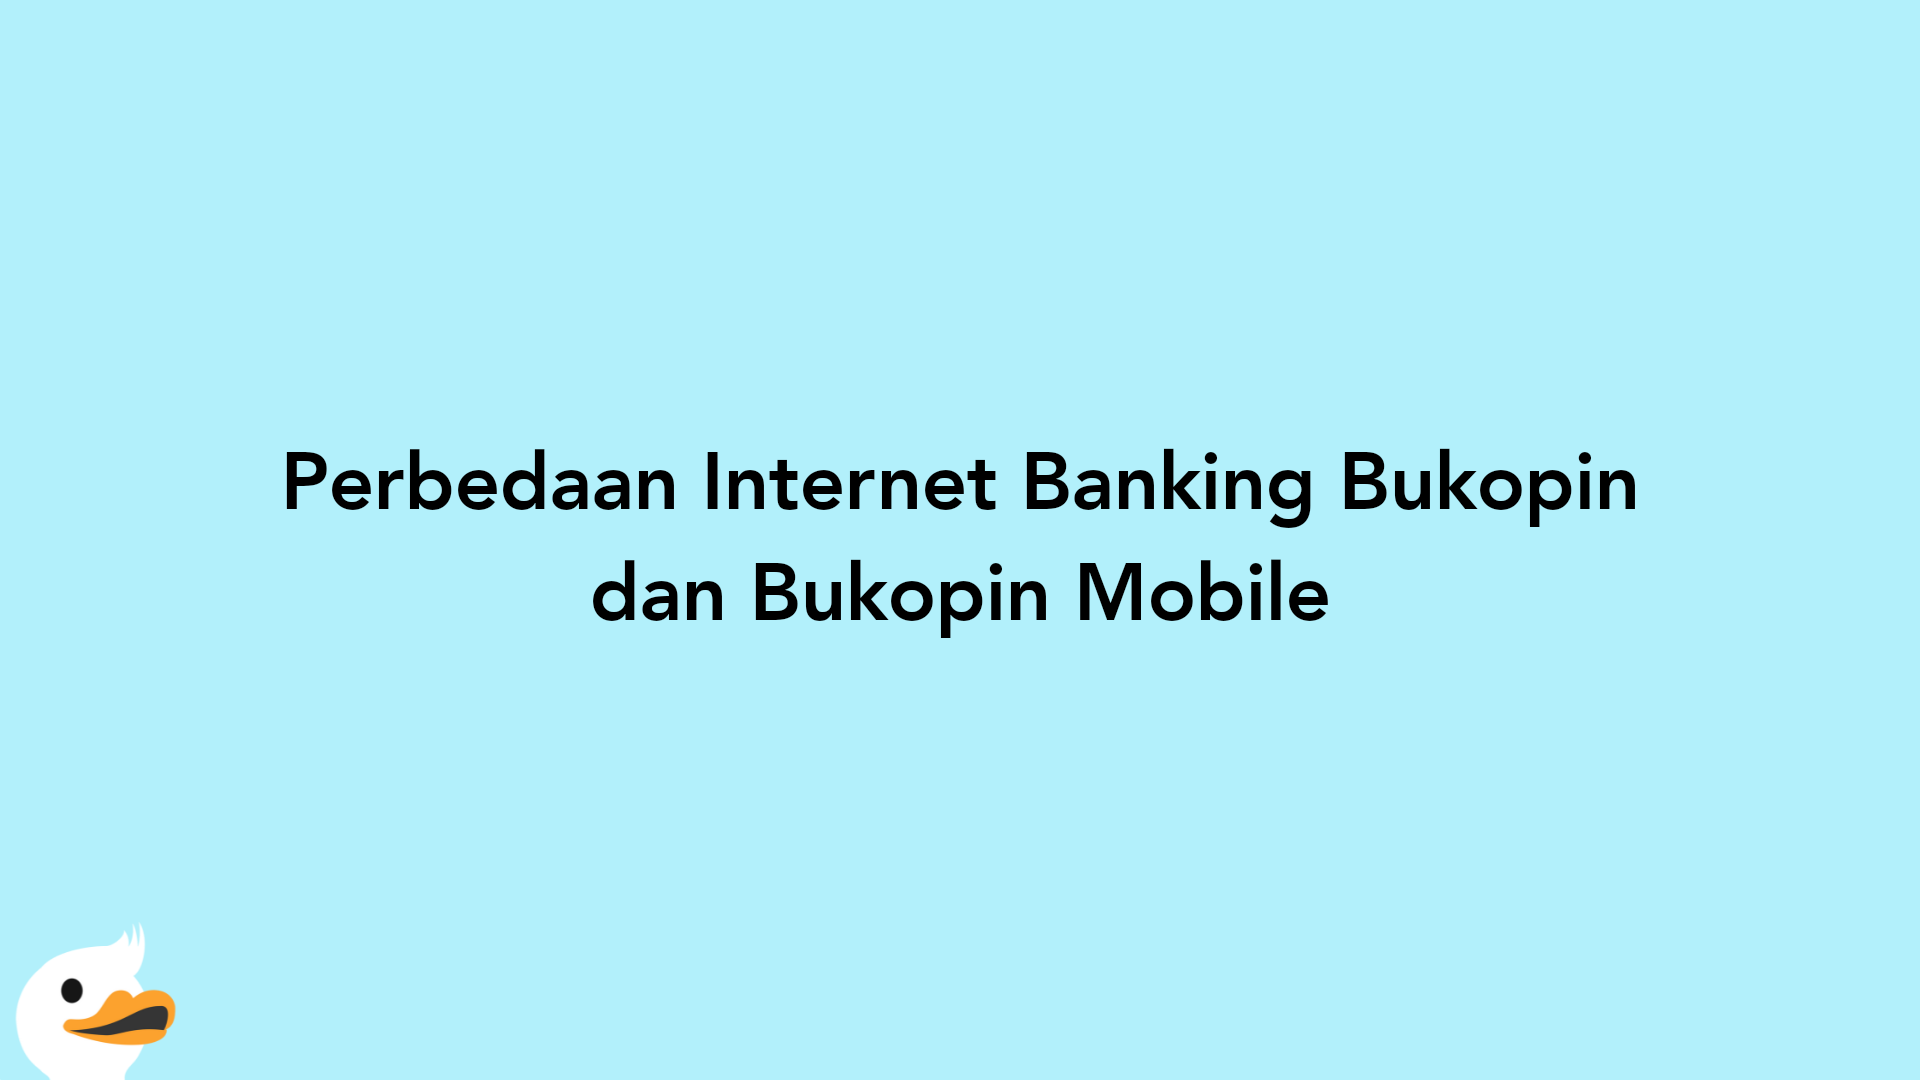 Perbedaan Internet Banking Bukopin dan Bukopin Mobile